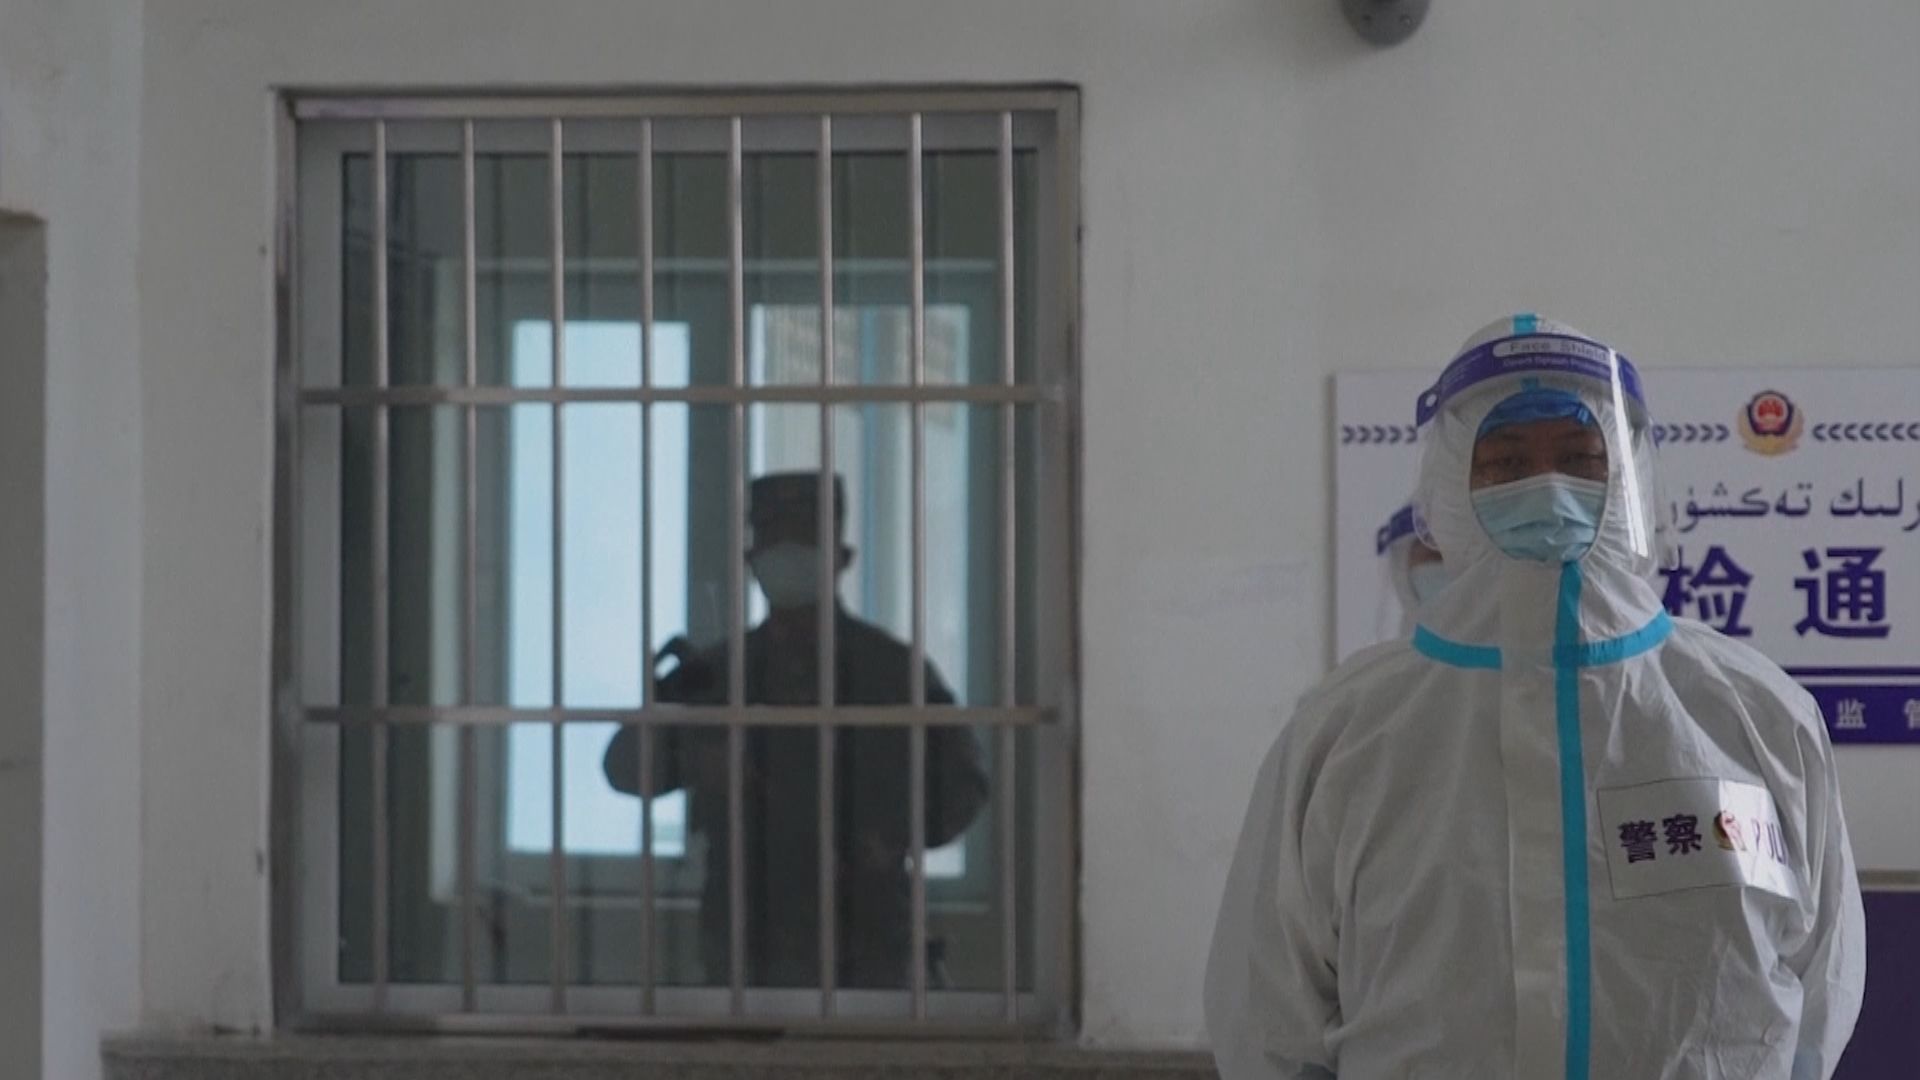 美聯社獲准採訪新疆拘留中心　據報官員曾阻拍攝